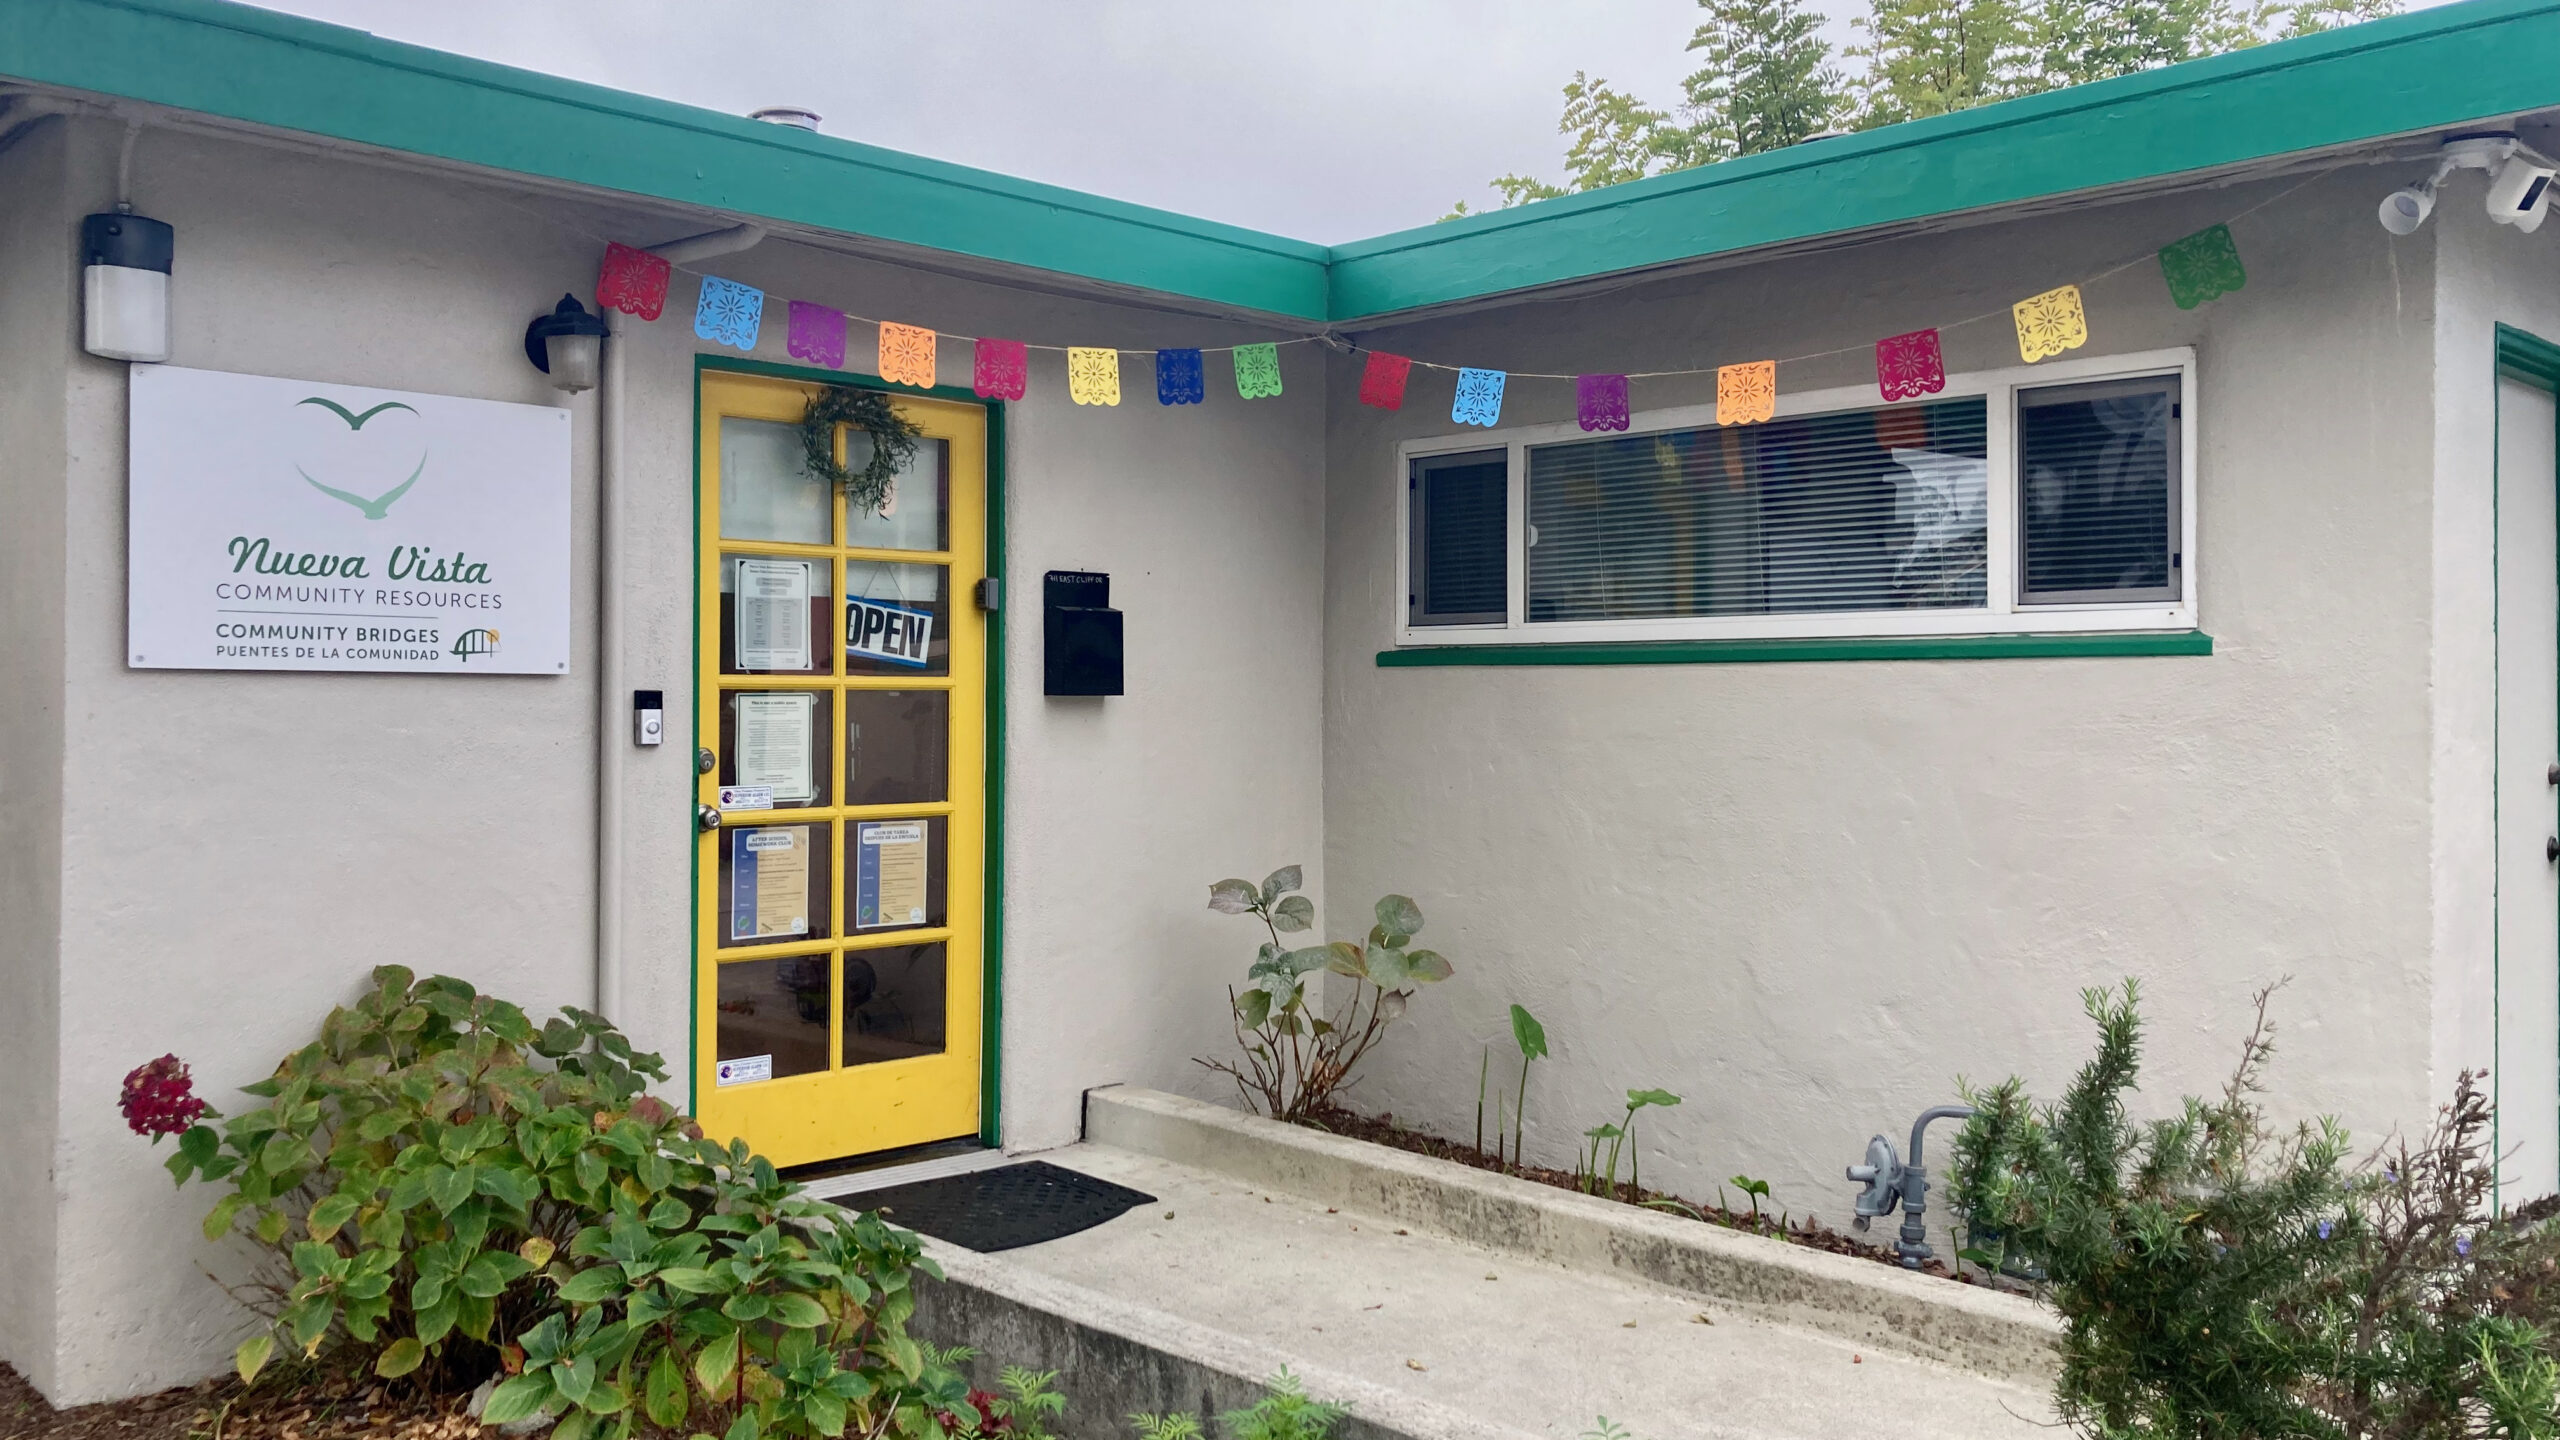 Nueva Vista Community Resources in Santa Cruz has a yellow door and papel picado decorating the entrance.